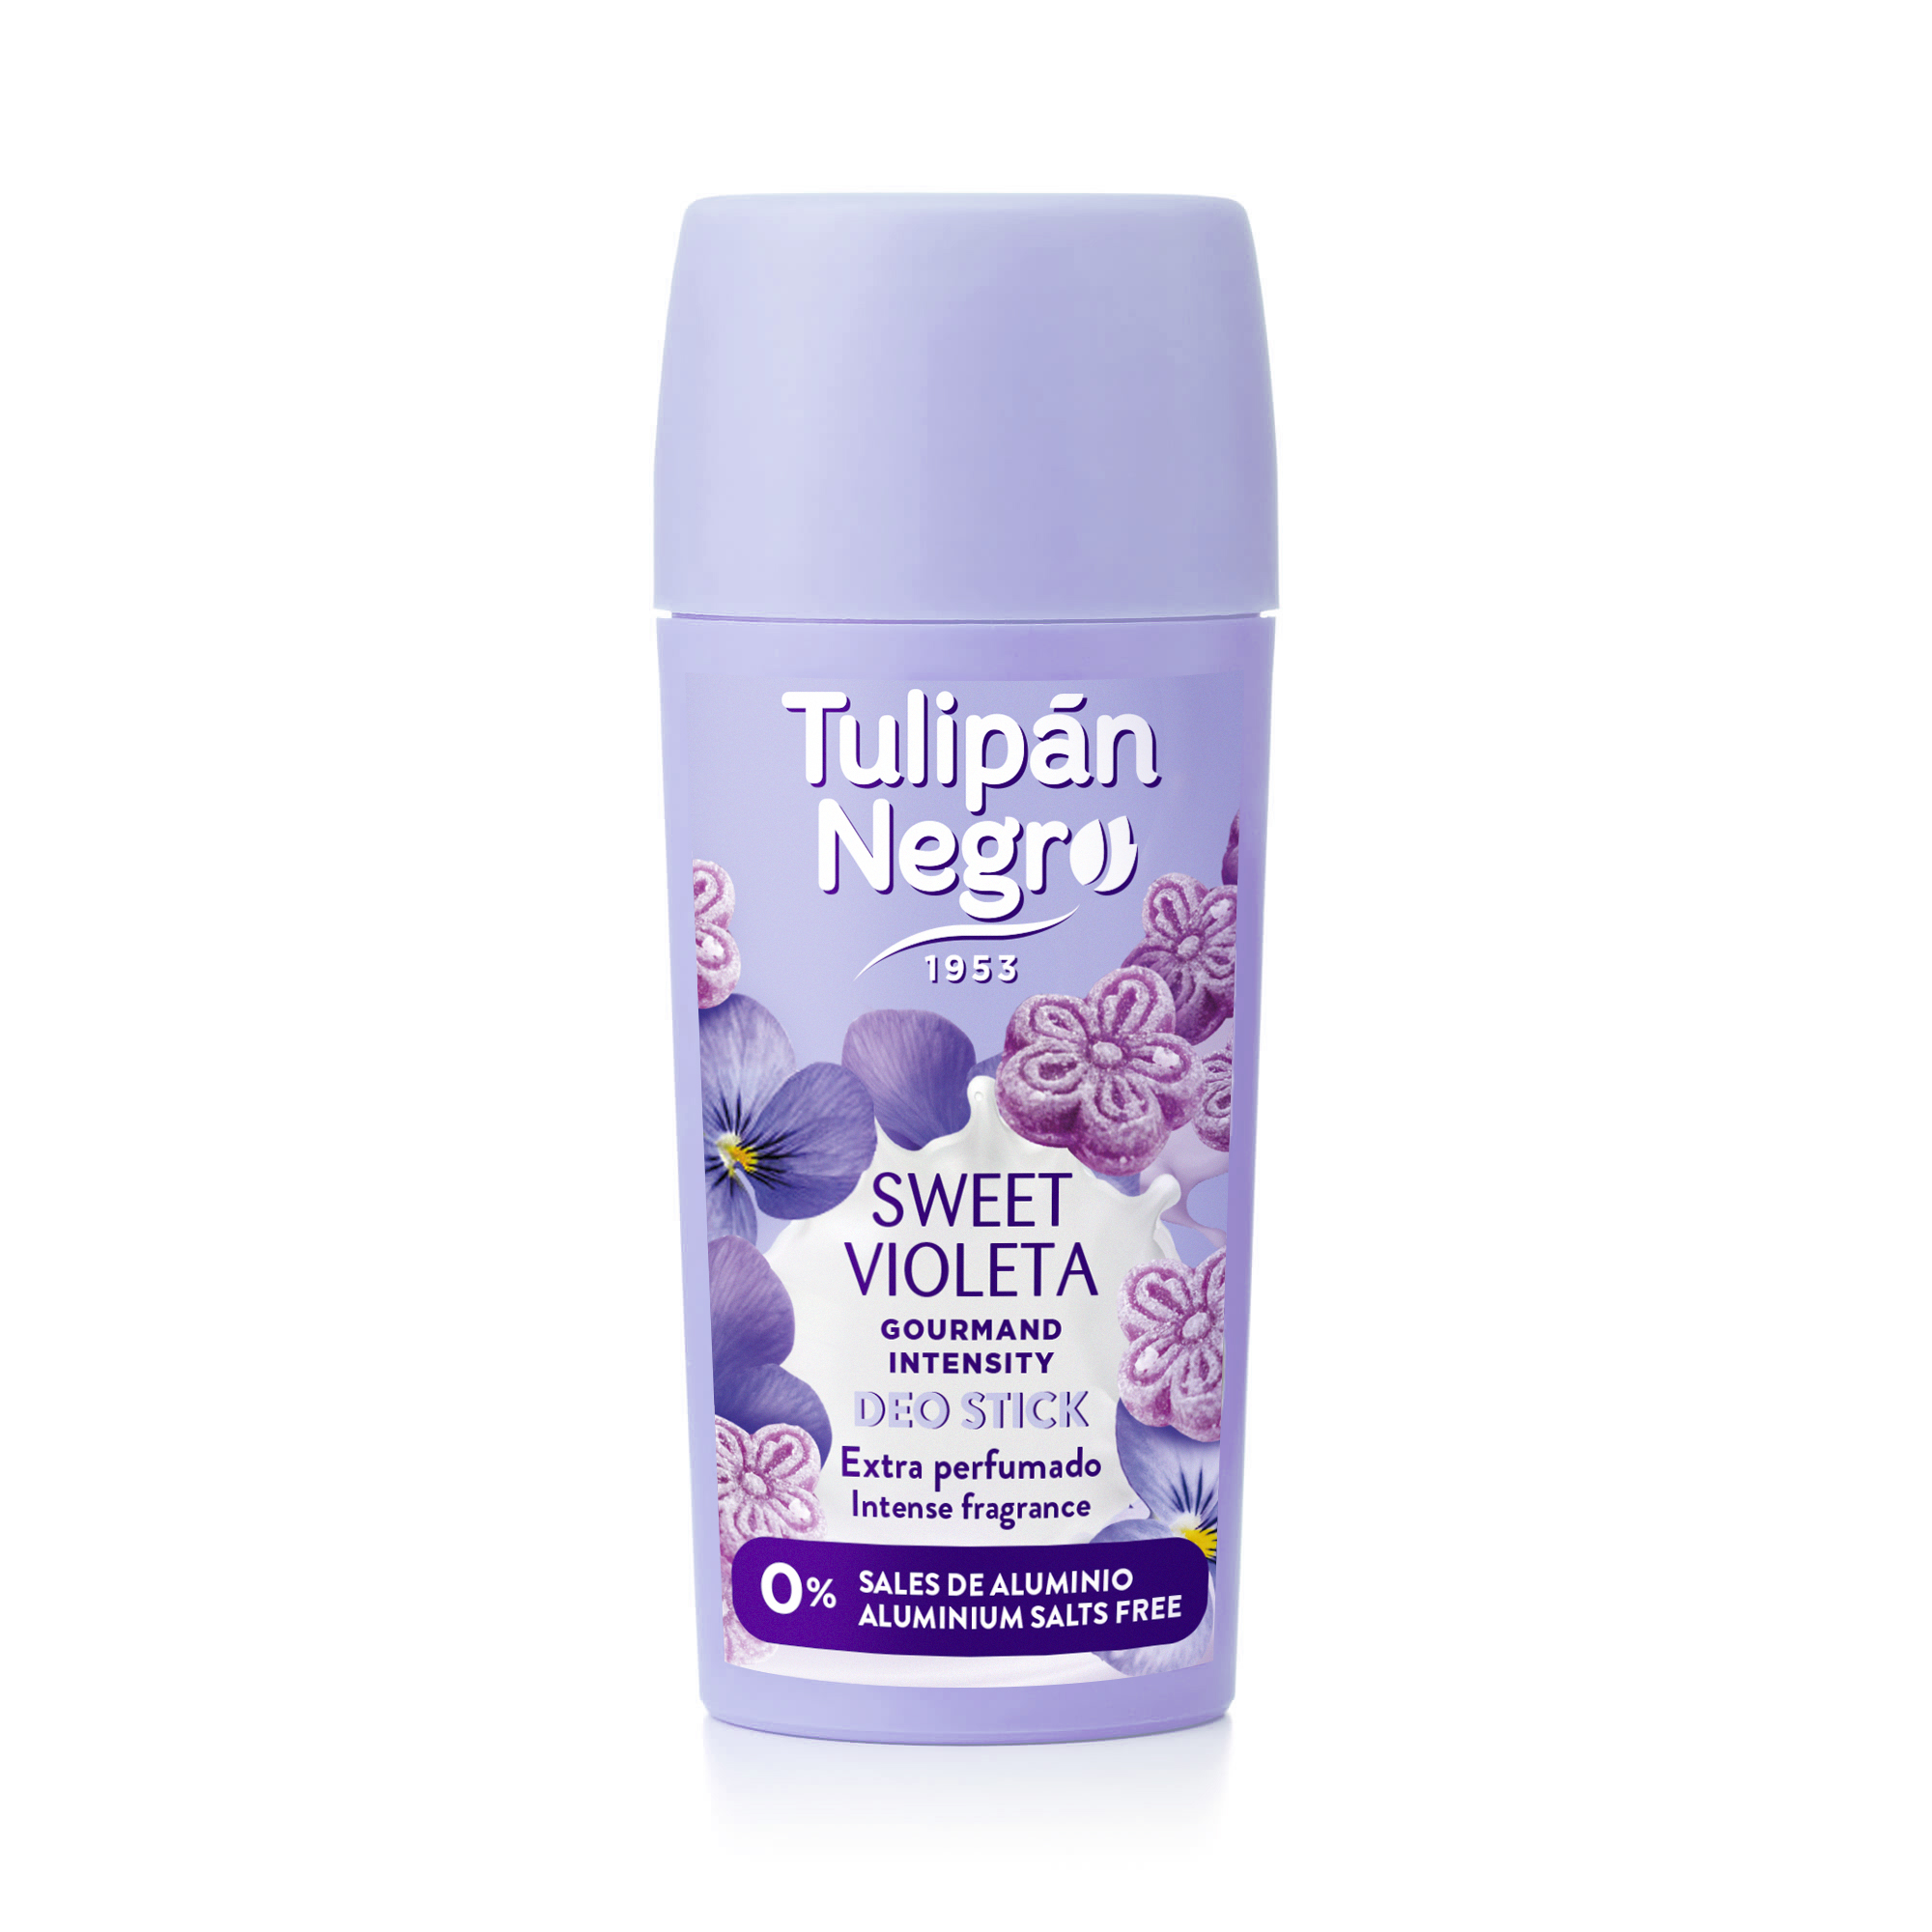 Tulipán Negro Eau de Cologne Sweety Violet 50ml